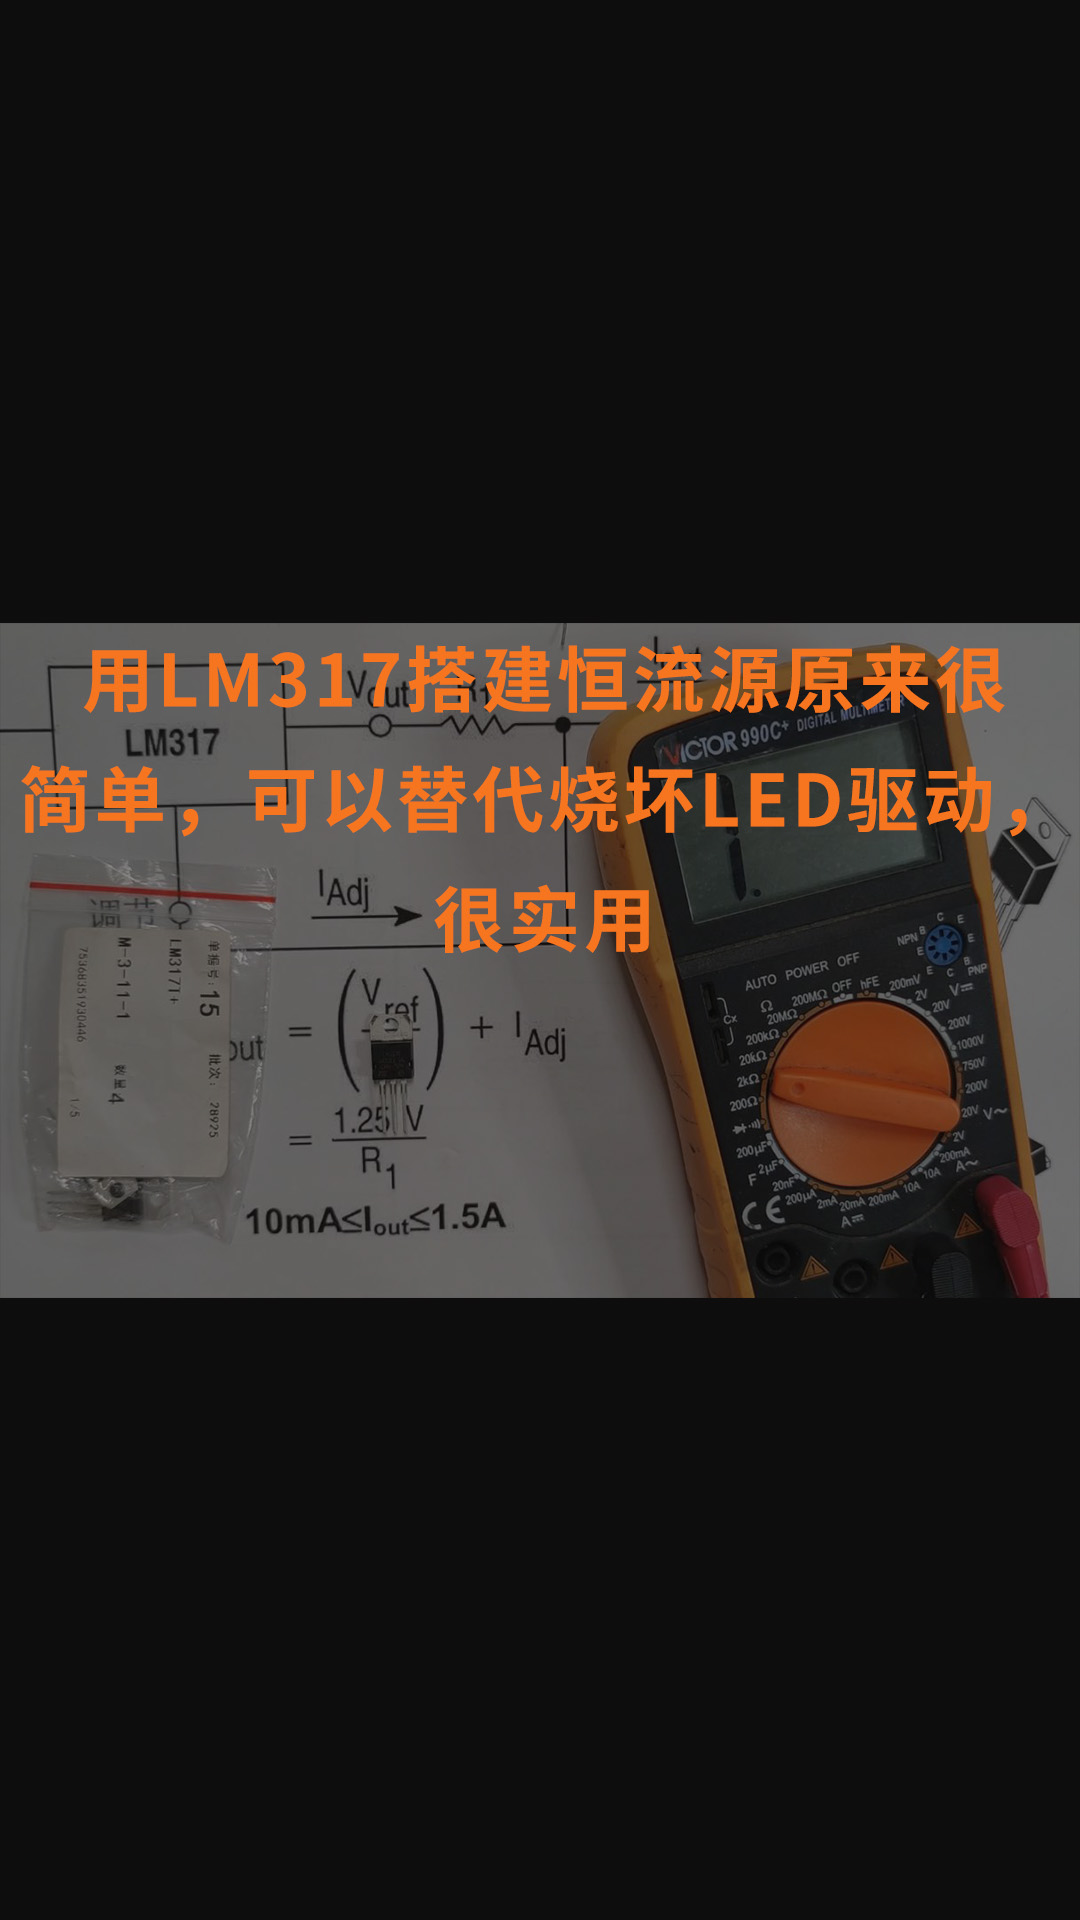 用LM317搭建恒流源原来很简单，可以替代烧坏LED驱动，很实用